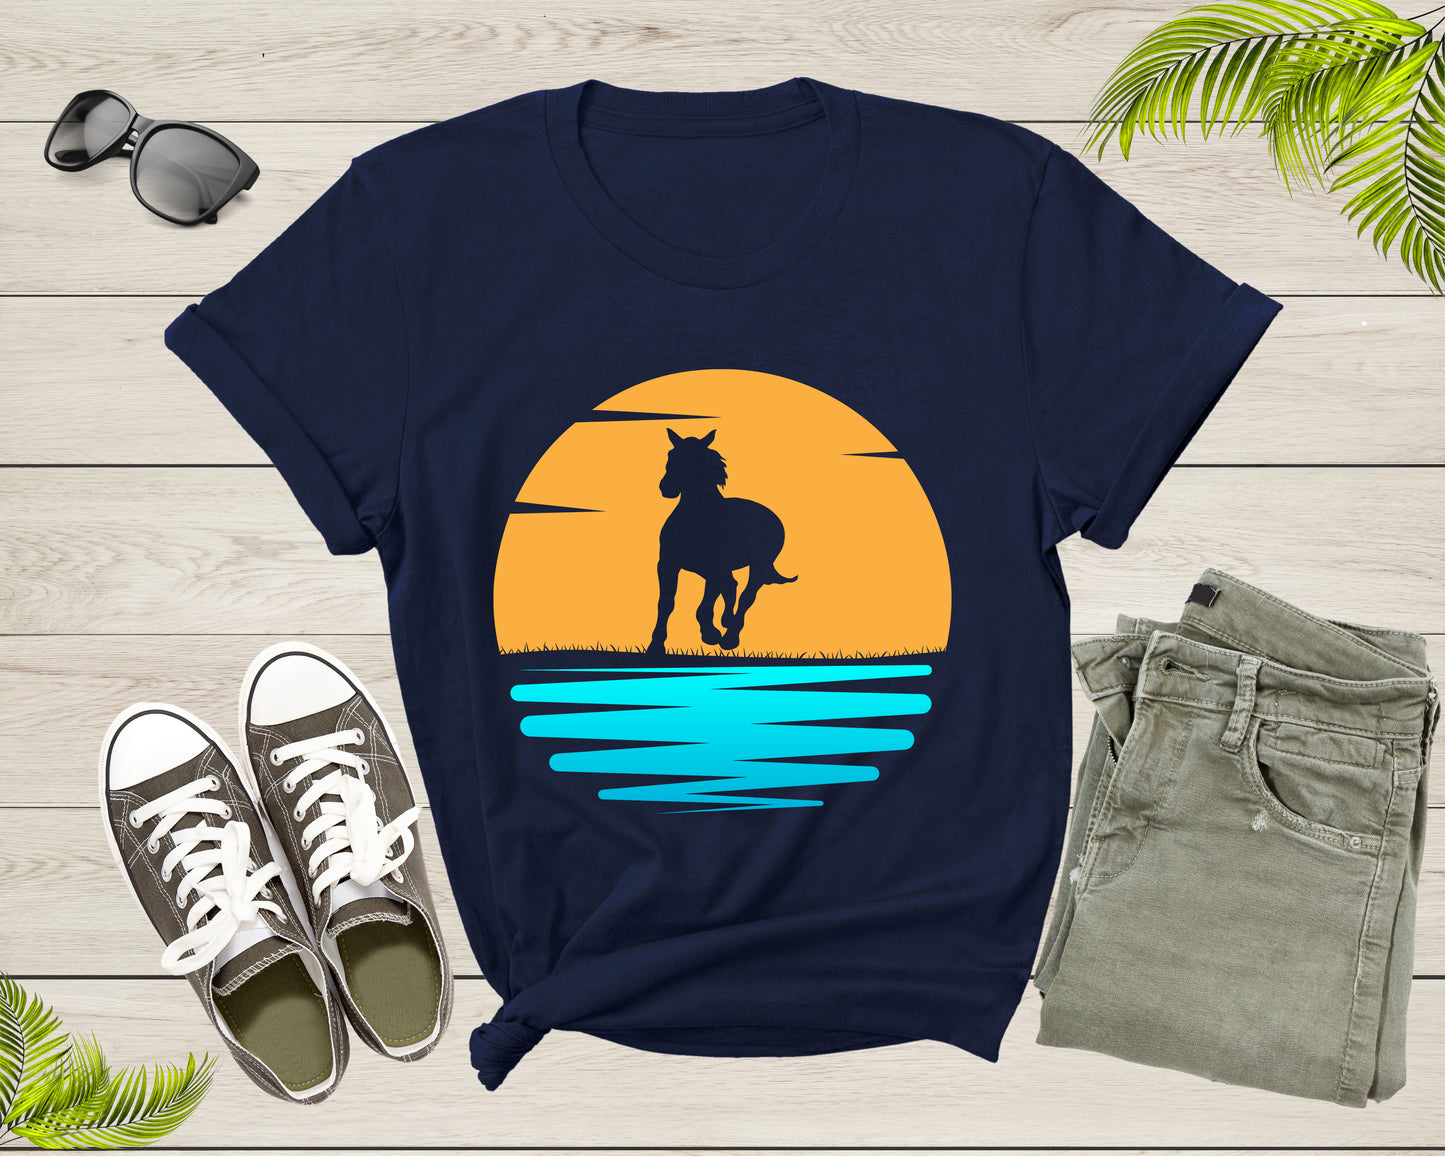 Cool Horse Pony Lover Gift Shirt For Men Women Kids Girls Boys Aesthetic Horse Lover Gift Tshirt Graphic Horse Sunset Silhouette T-shirt